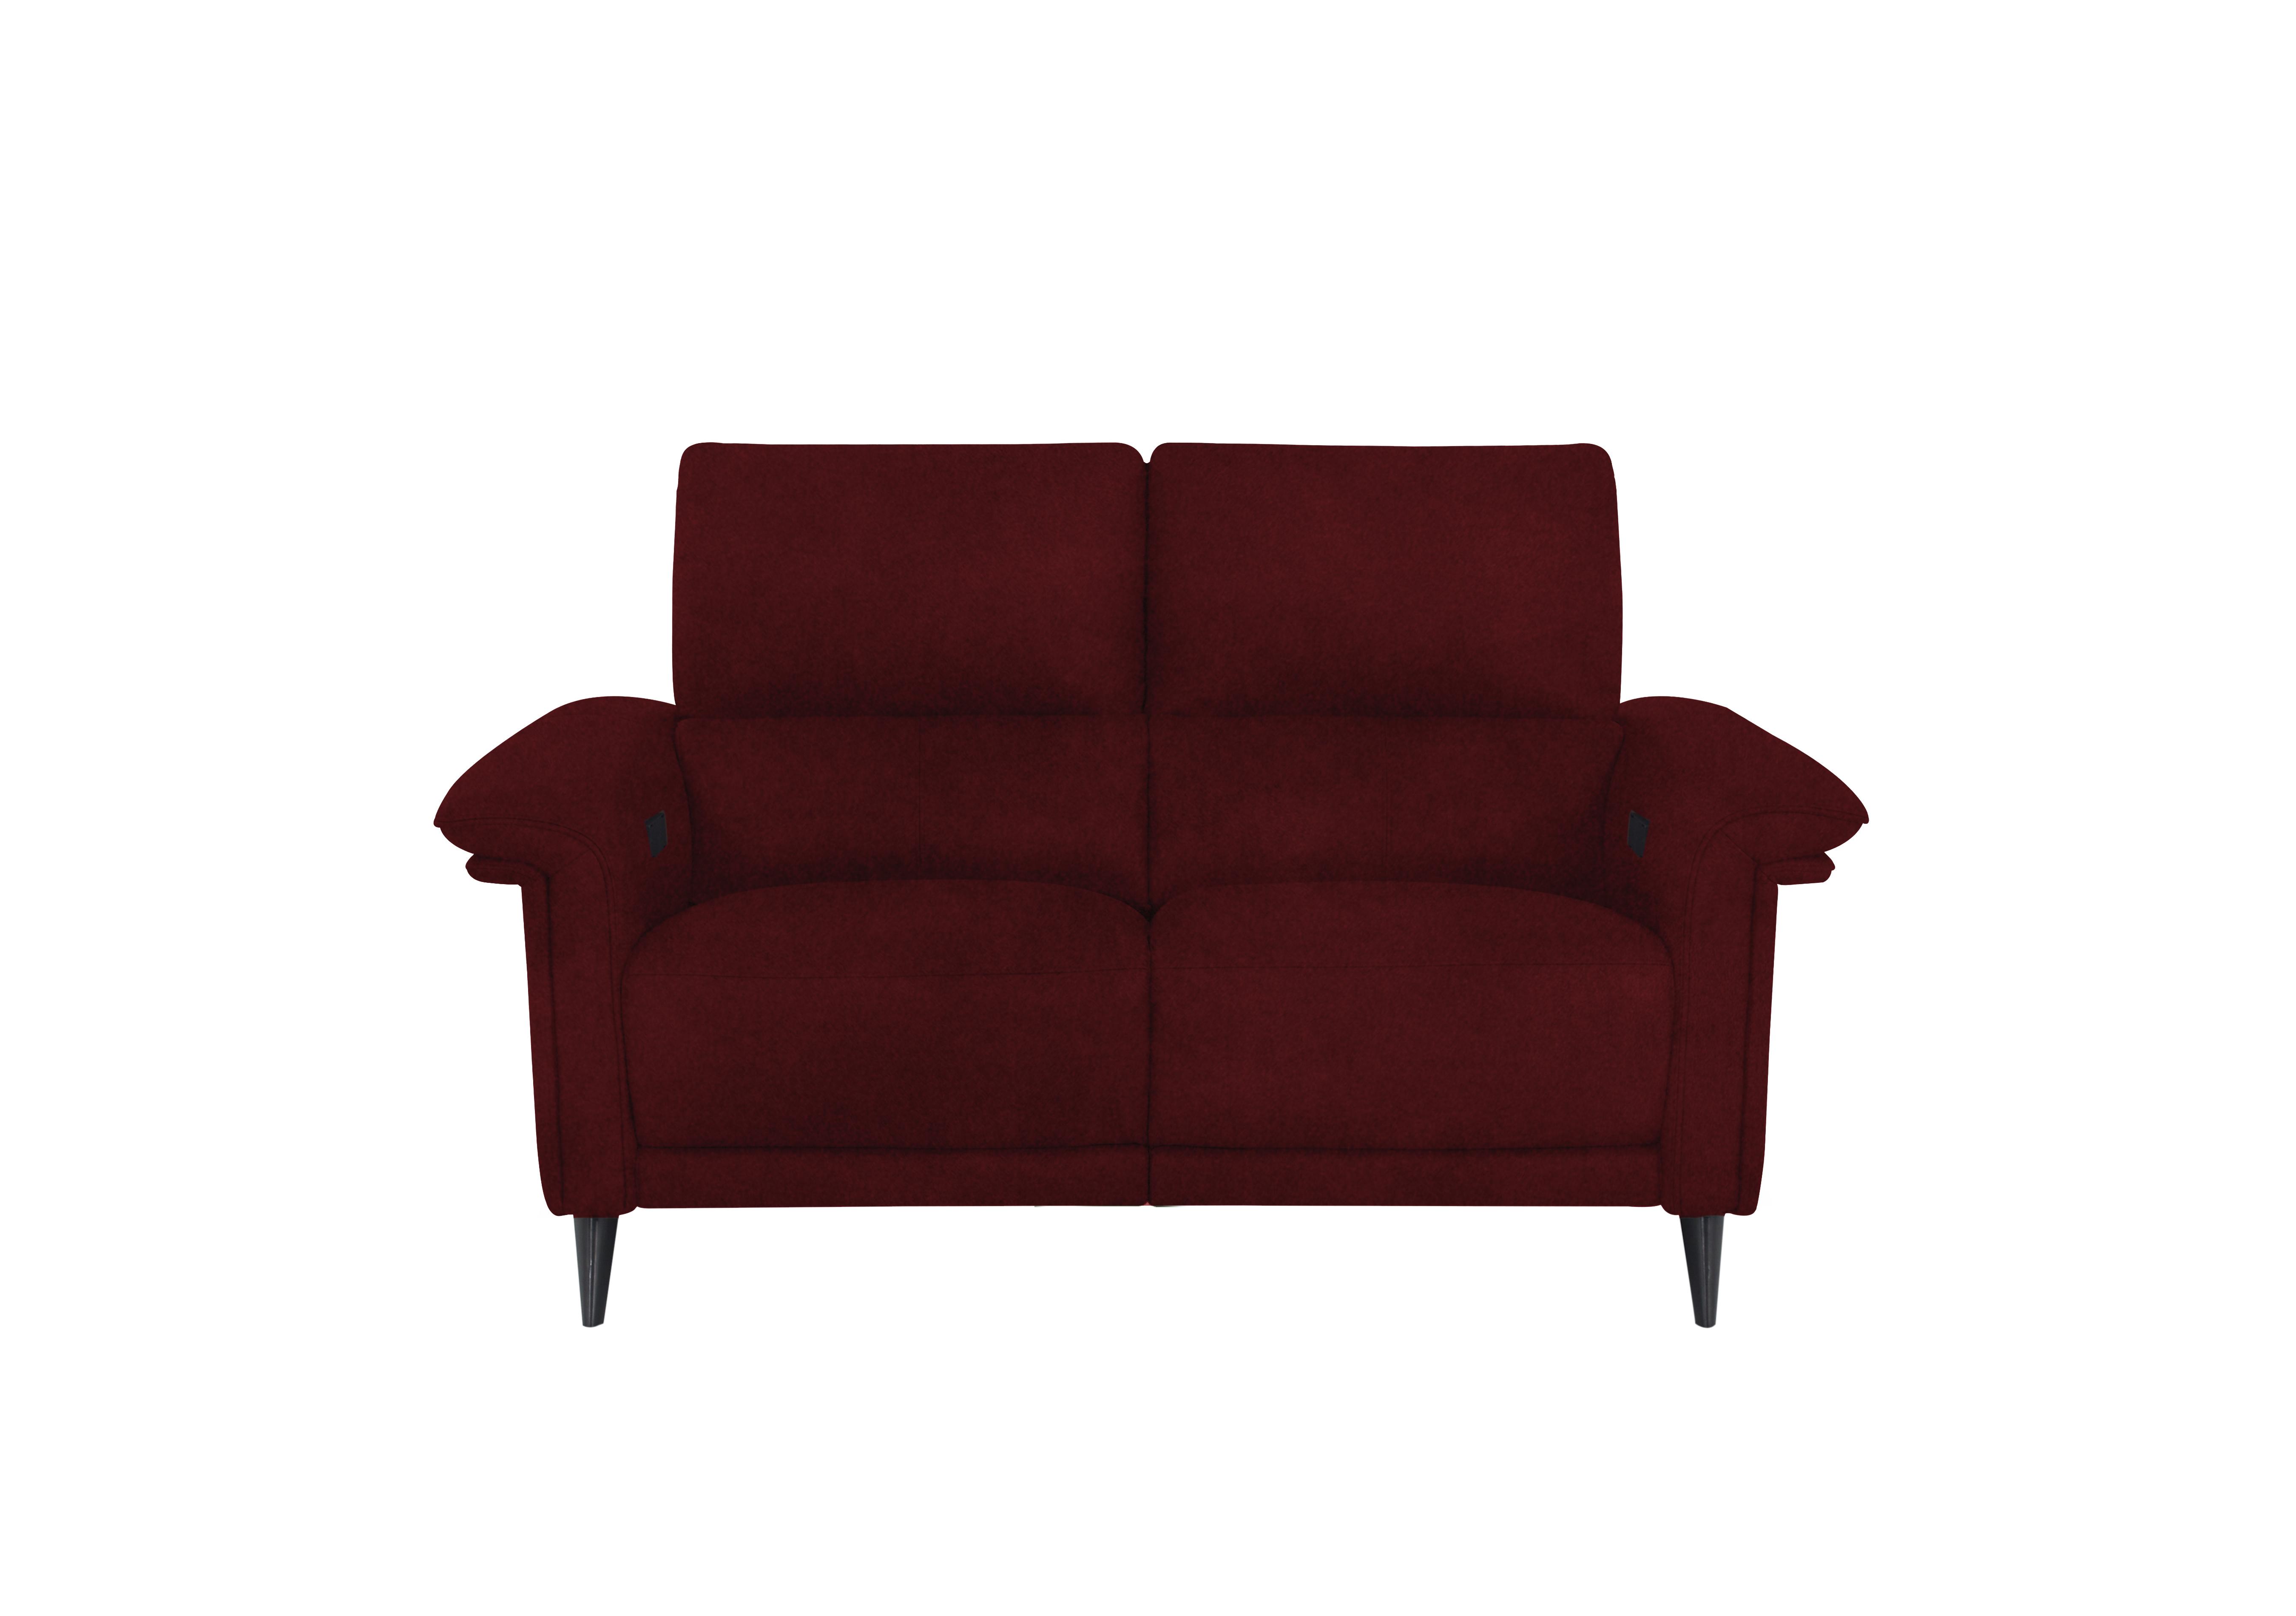 Huxley 2 Seater Fabric Sofa in Fab-Meg-R65 Burgundy on Furniture Village